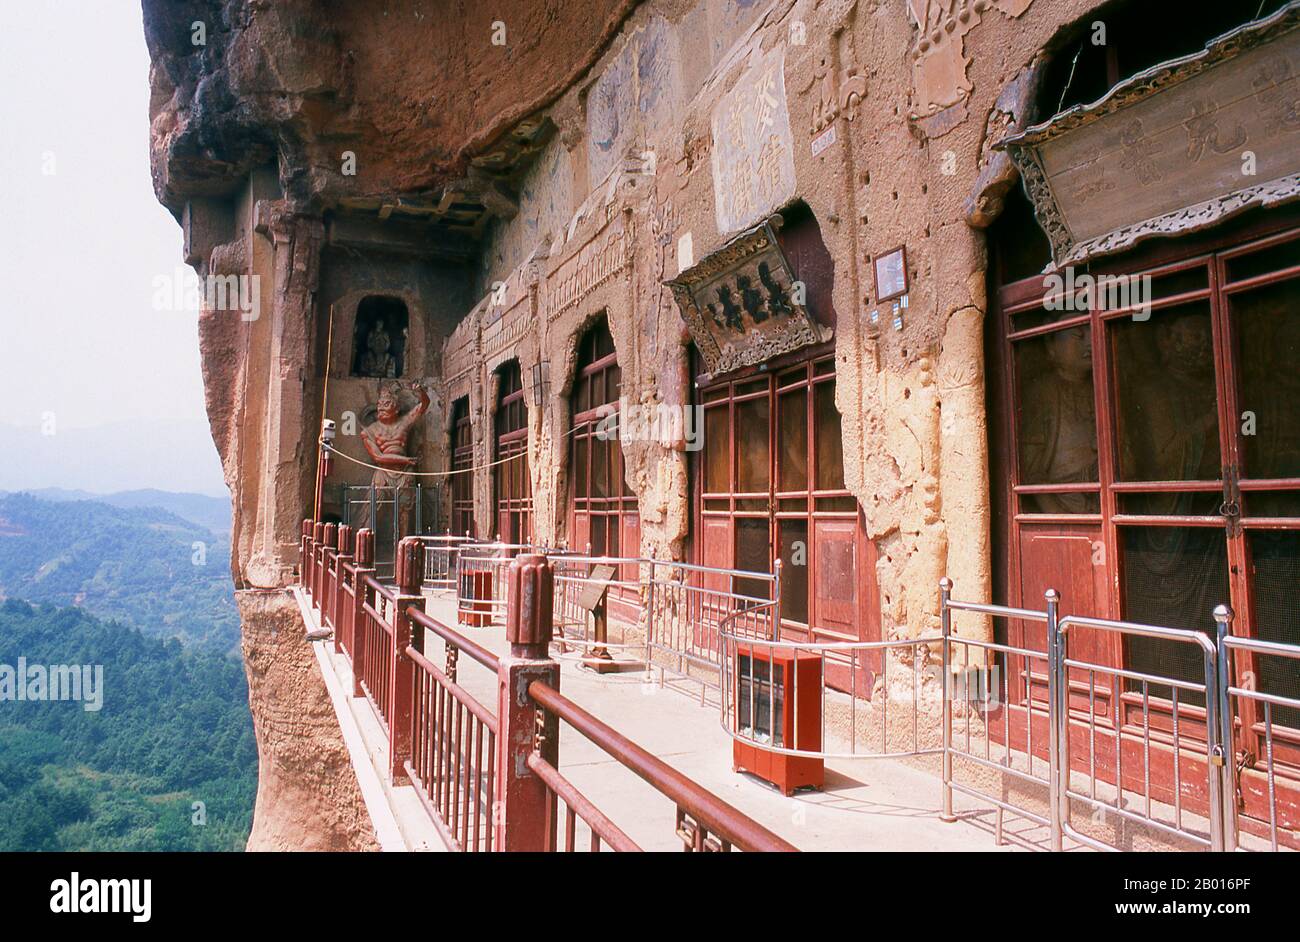 China: Eingeschlossene Höhlen, Maiji Shan Grotten, Tianshui, Provinz Gansu. Maijishan Shiku (Maiji Shan Grotten) sind eine der vier wichtigsten buddhistischen Tempelgruppen Chinas (die anderen sind Datong, Luoyang und die Mogao-Höhlen in Dunhuang). Ausgehend von den Dynastien Nördlicher Wei (386-535) und Nördlicher Zhou (557-81) schnitten Buddhisten Höhlen in die Seiten eines roten Ausschnitts, der aus den umliegenden Laubhügeln aufsteigt. Figuren des Buddha, von Bodhisattvas und Schülern wurden in härtere Felsen gehauen, die von anderswo hergebracht wurden, und in den Höhlen installiert. Stockfoto